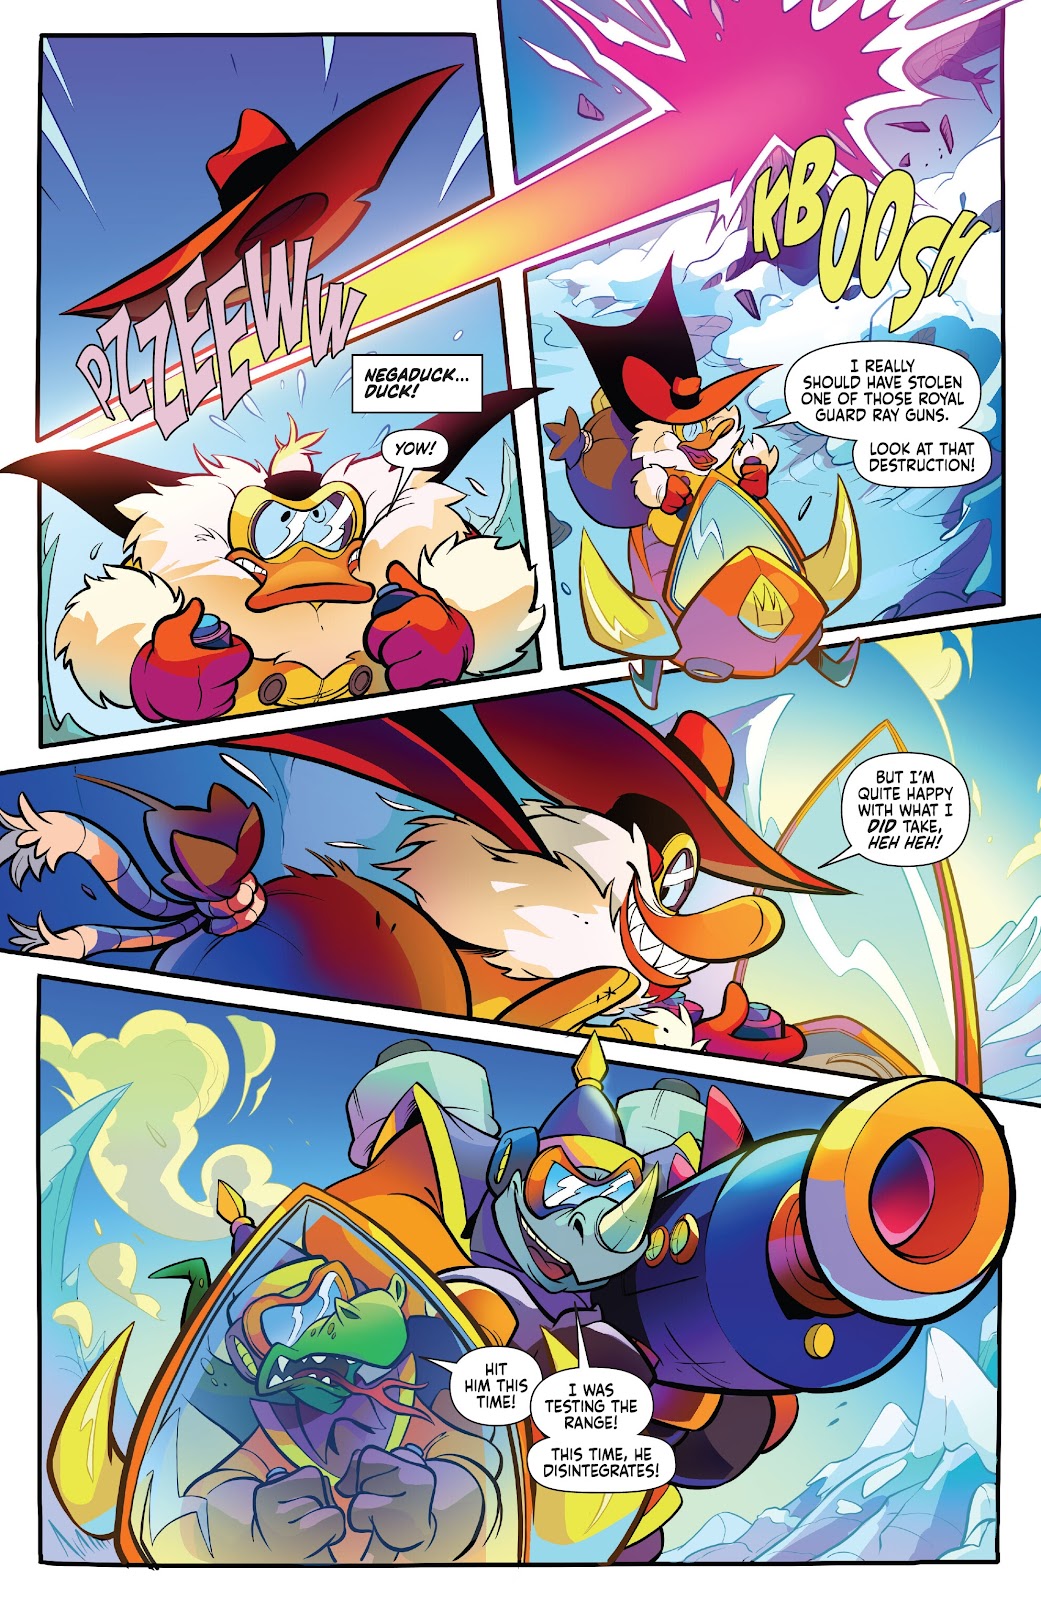 Darkwing Duck: Negaduck issue 5 - Page 8